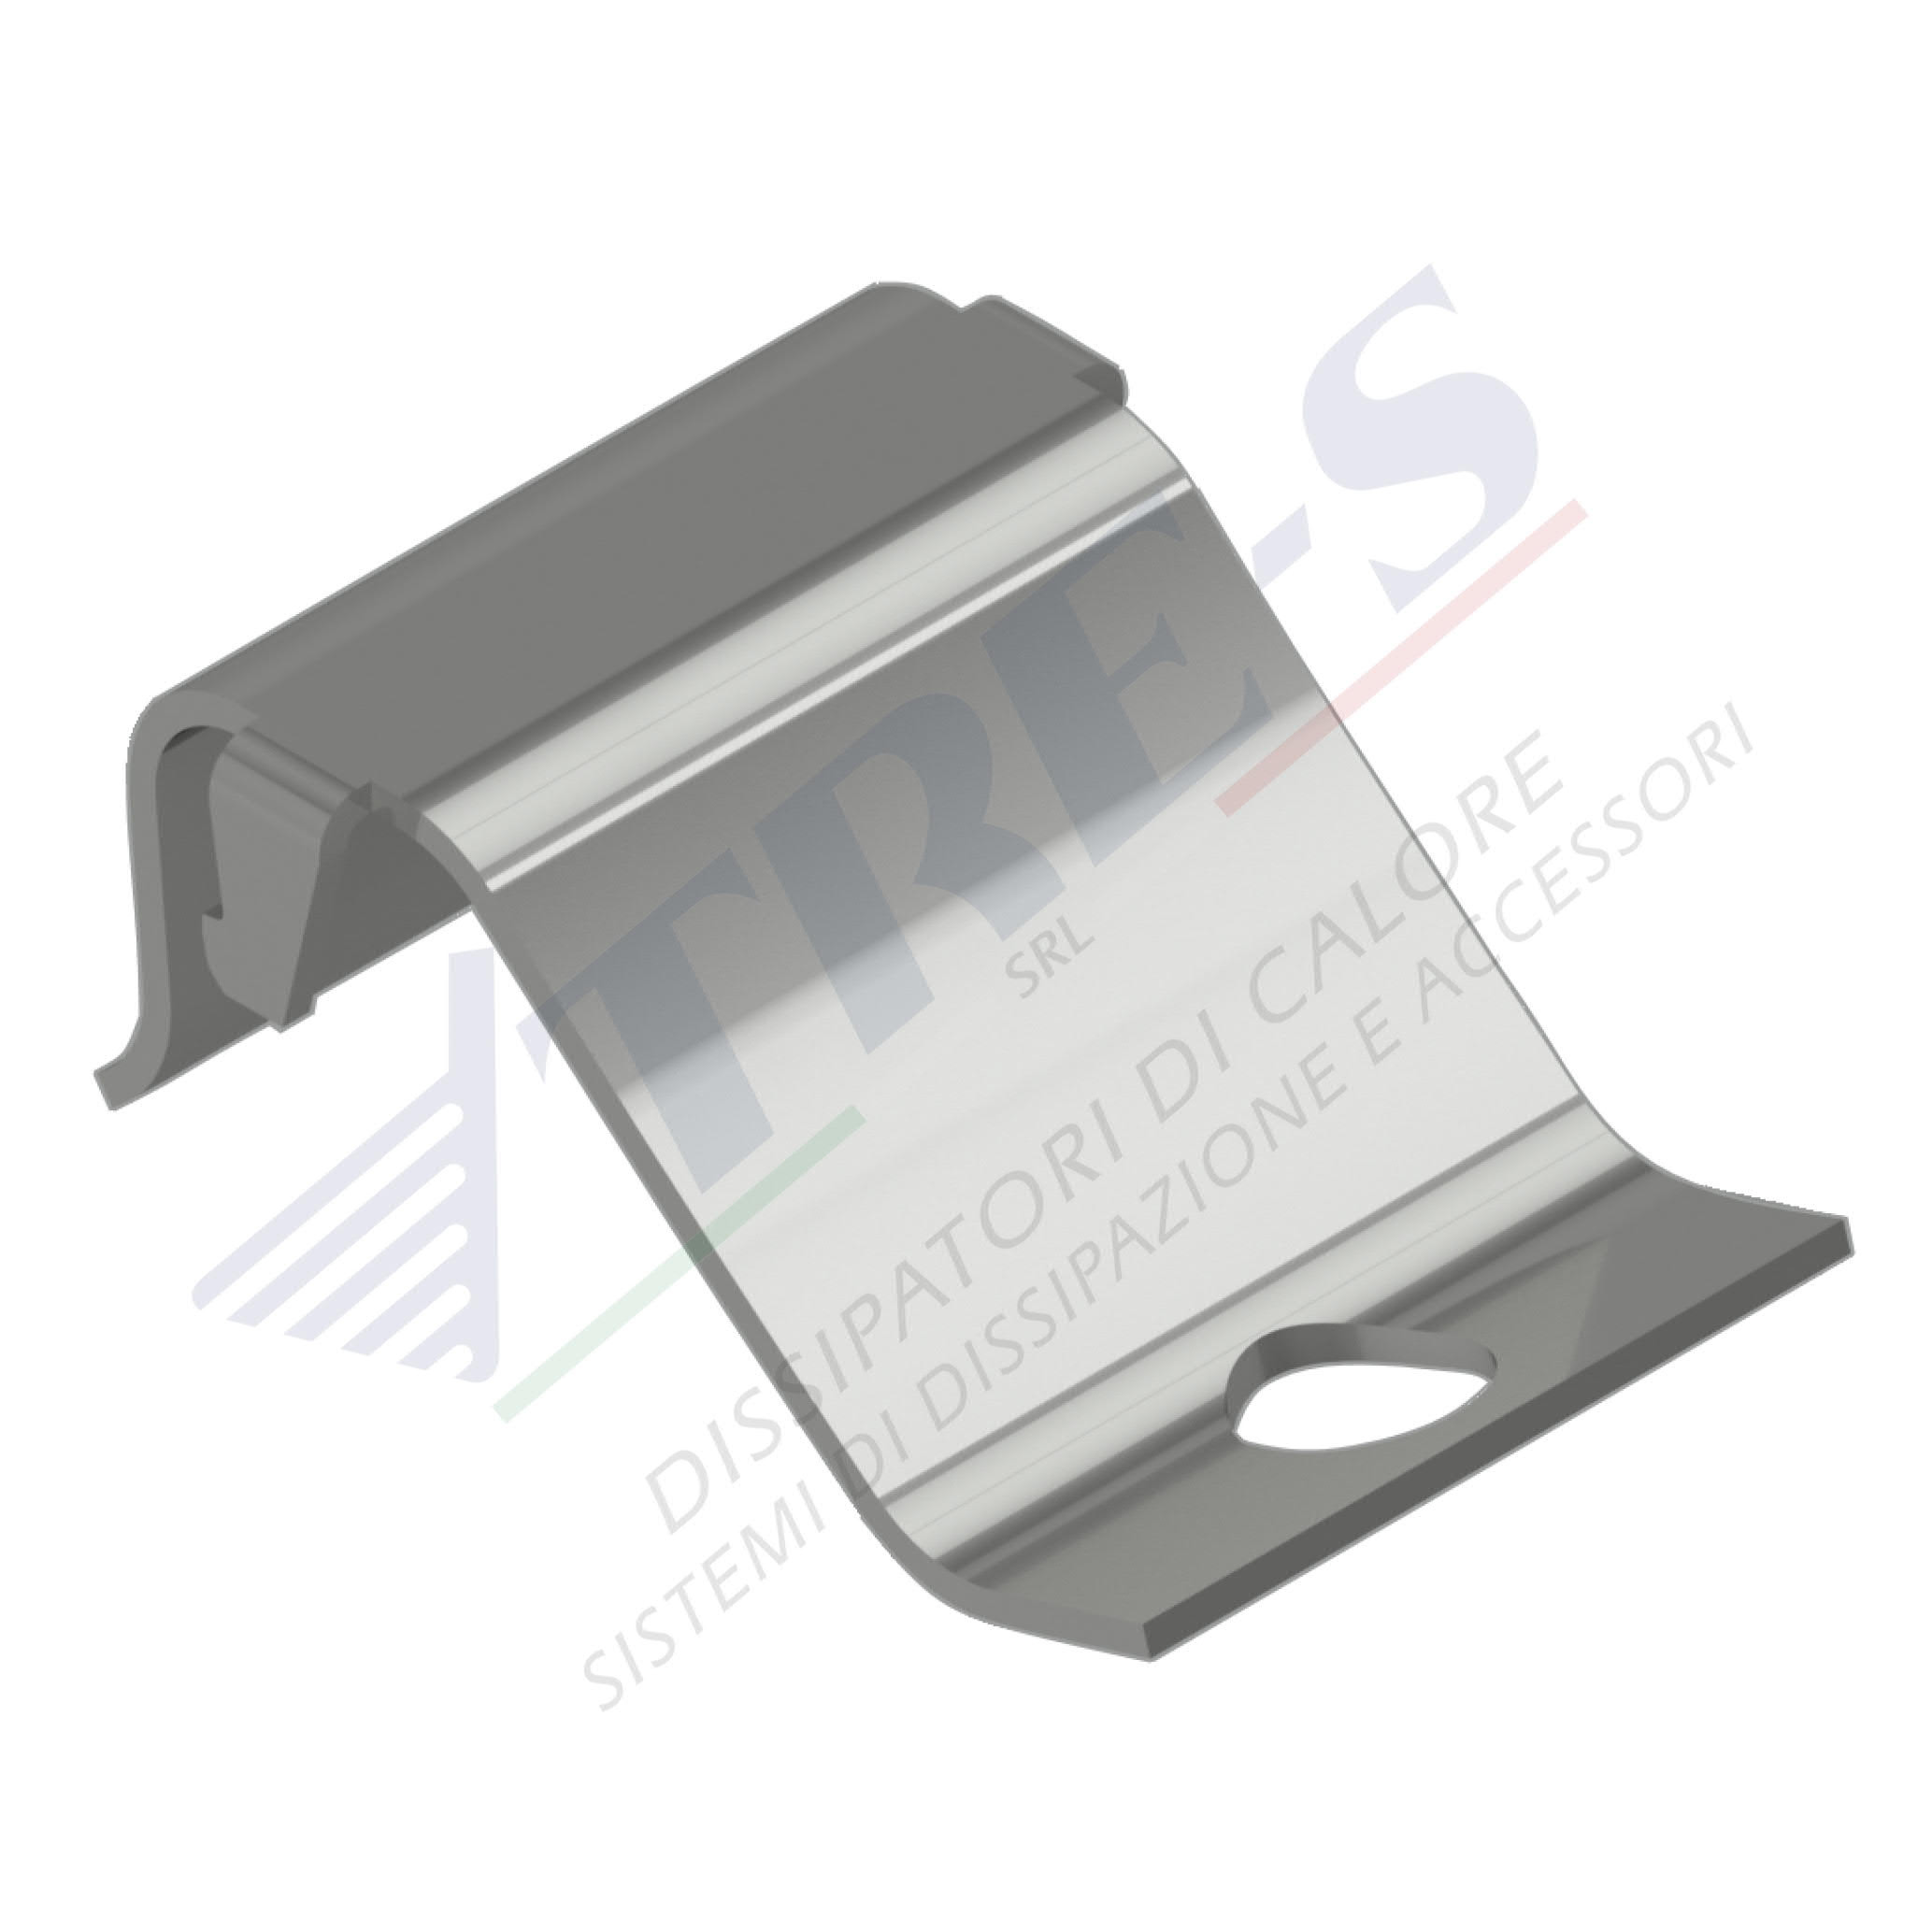 PRM002 - Dissipatori con sistema a clip 